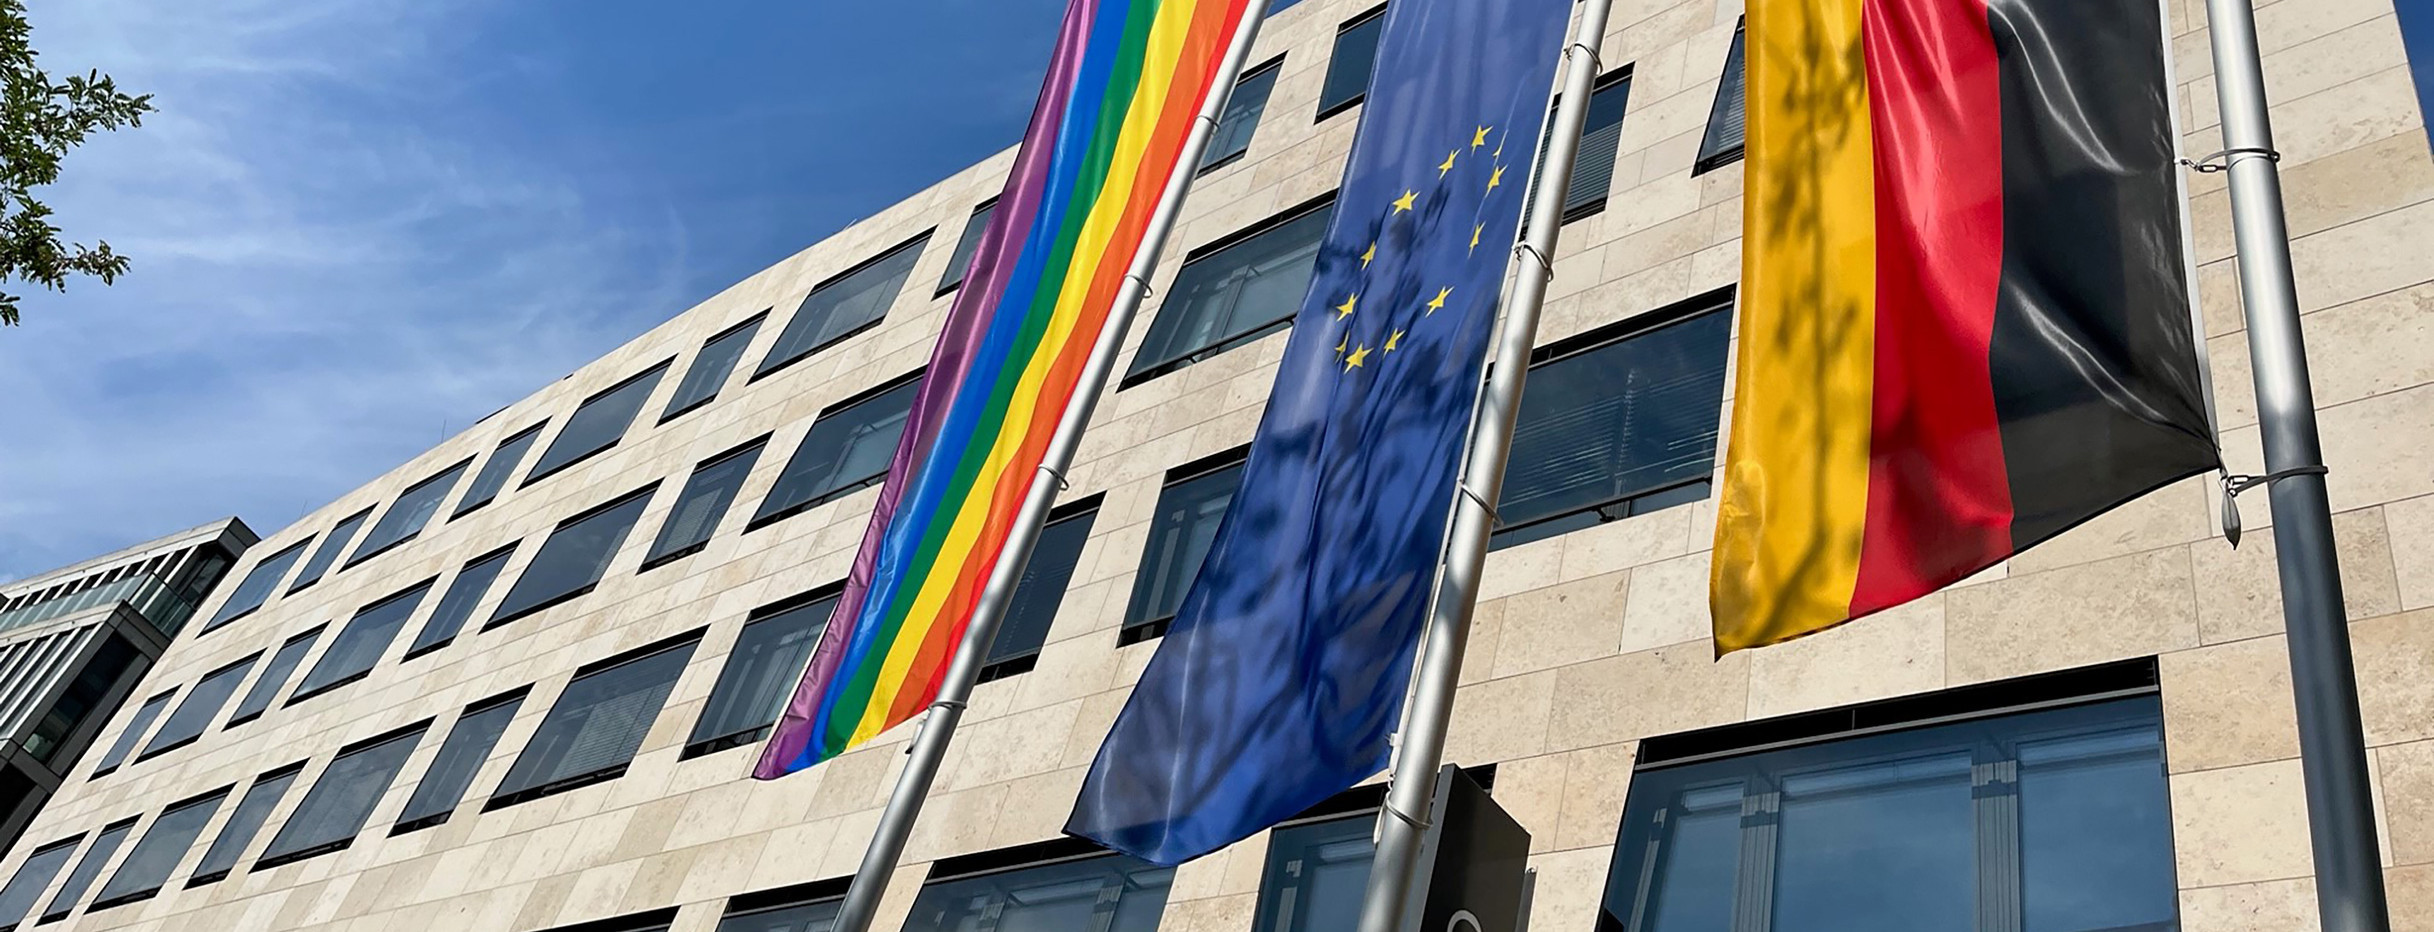 Regenbogenflagge vor dem Sozialministerium Baden-Württemberg im Dorotheen Quartier in Stuttgart